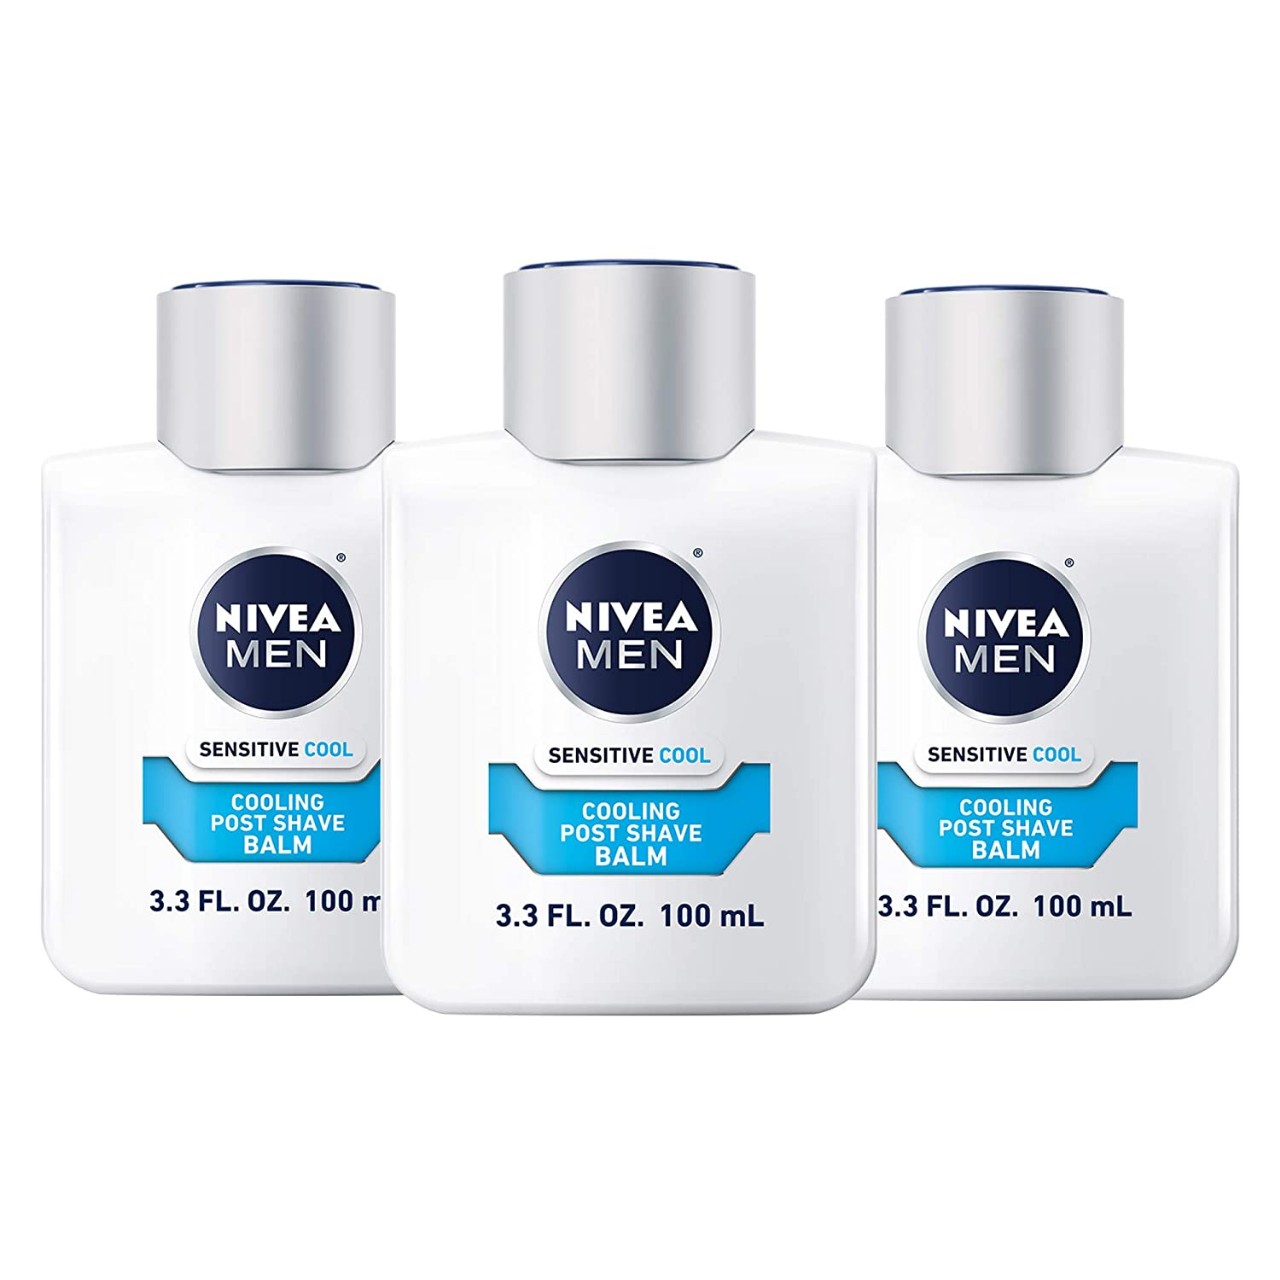 NIVEA Men Sensitive Cooling Post Shave Balm - Calms and Cools Skin After Shaving - 3.3 fl. oz. Bottl